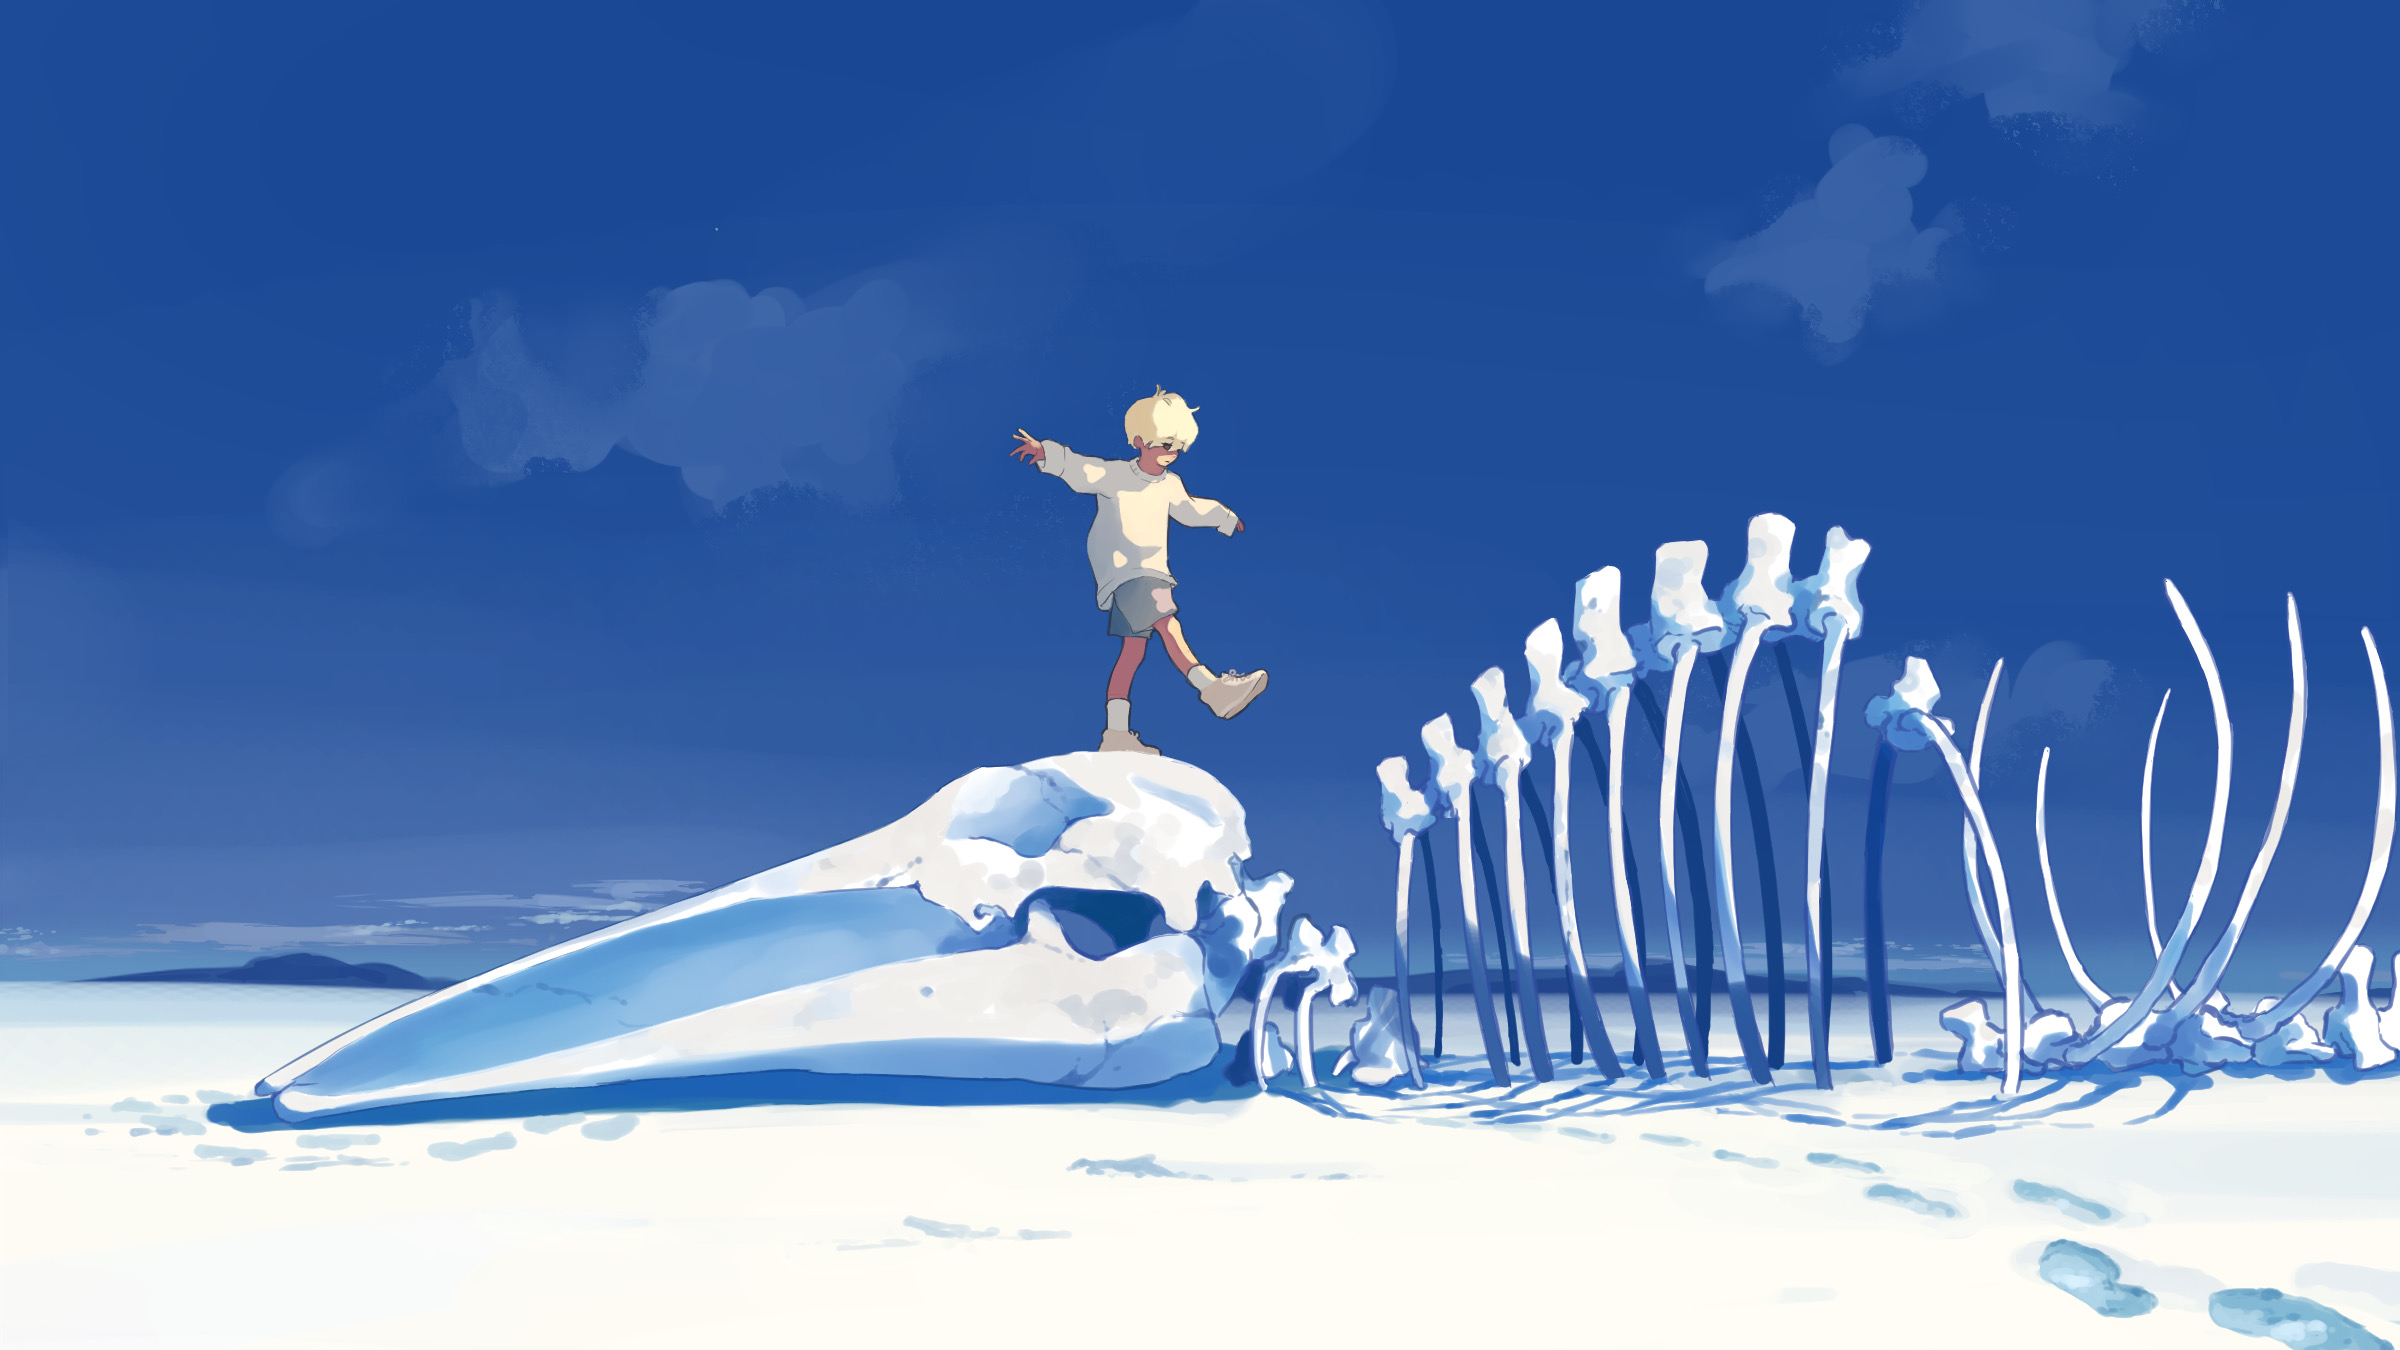 General 2400x1350 Taizo digital art artwork illustration blue bones animals desert sand sky skeleton white socks socks standing on one leg